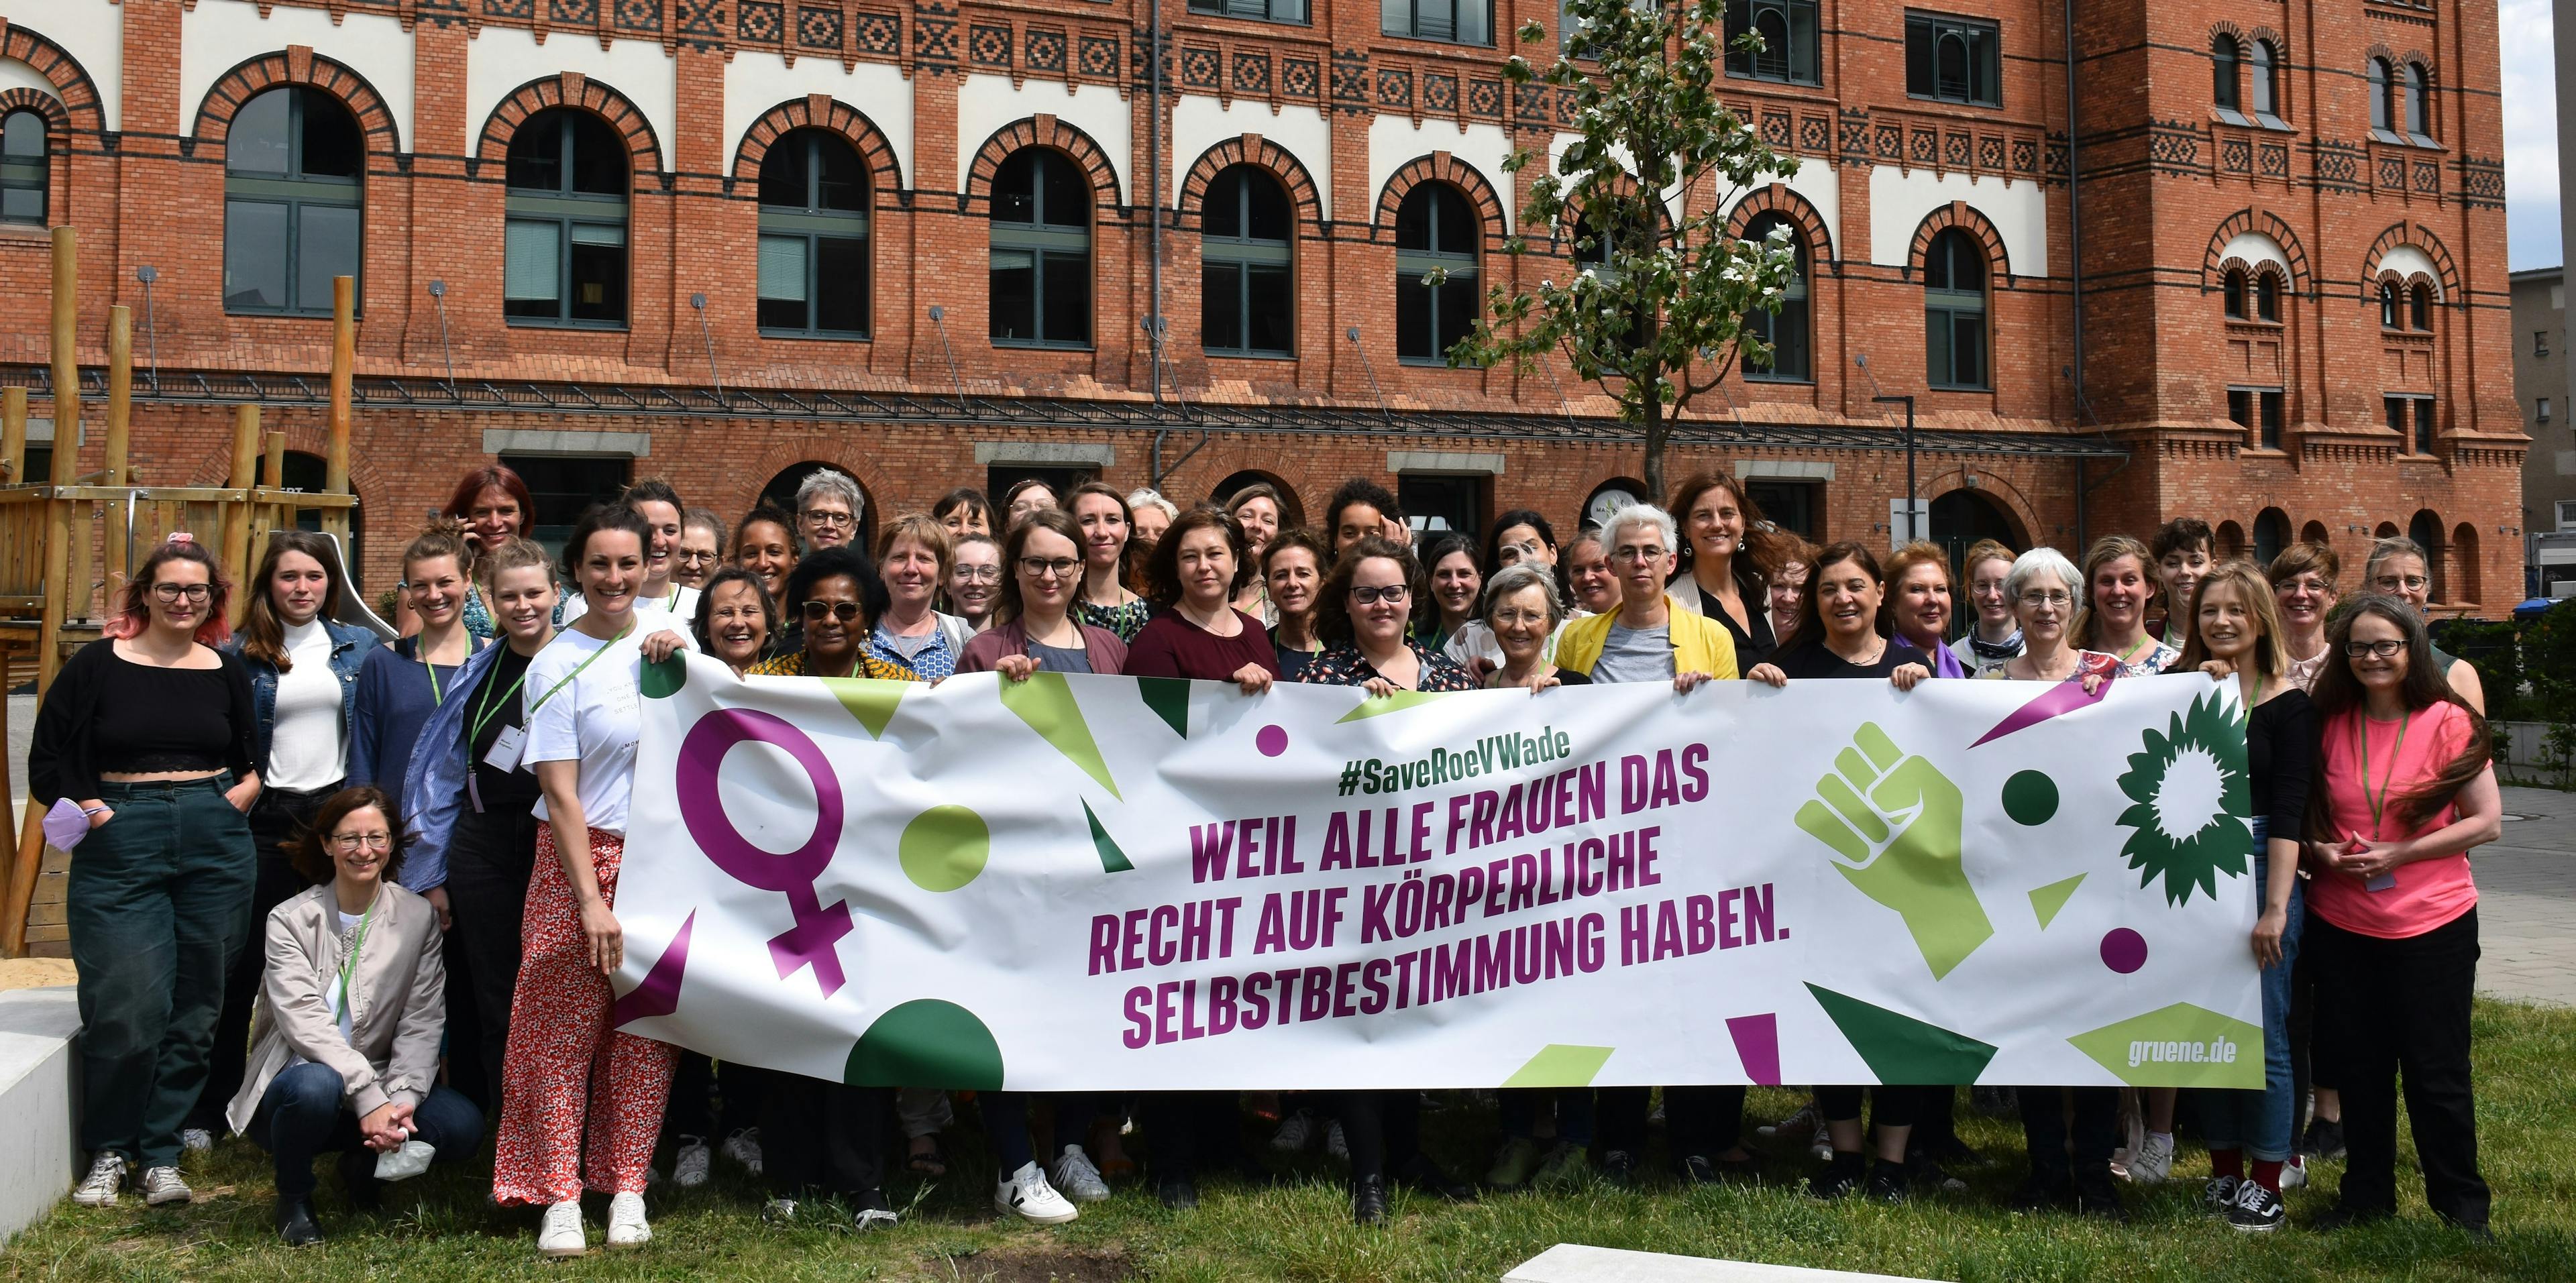 Gruppenfoto mit Banner "Weil alle Frauen das Recht auf körperliche Selbstbestimmung haben"